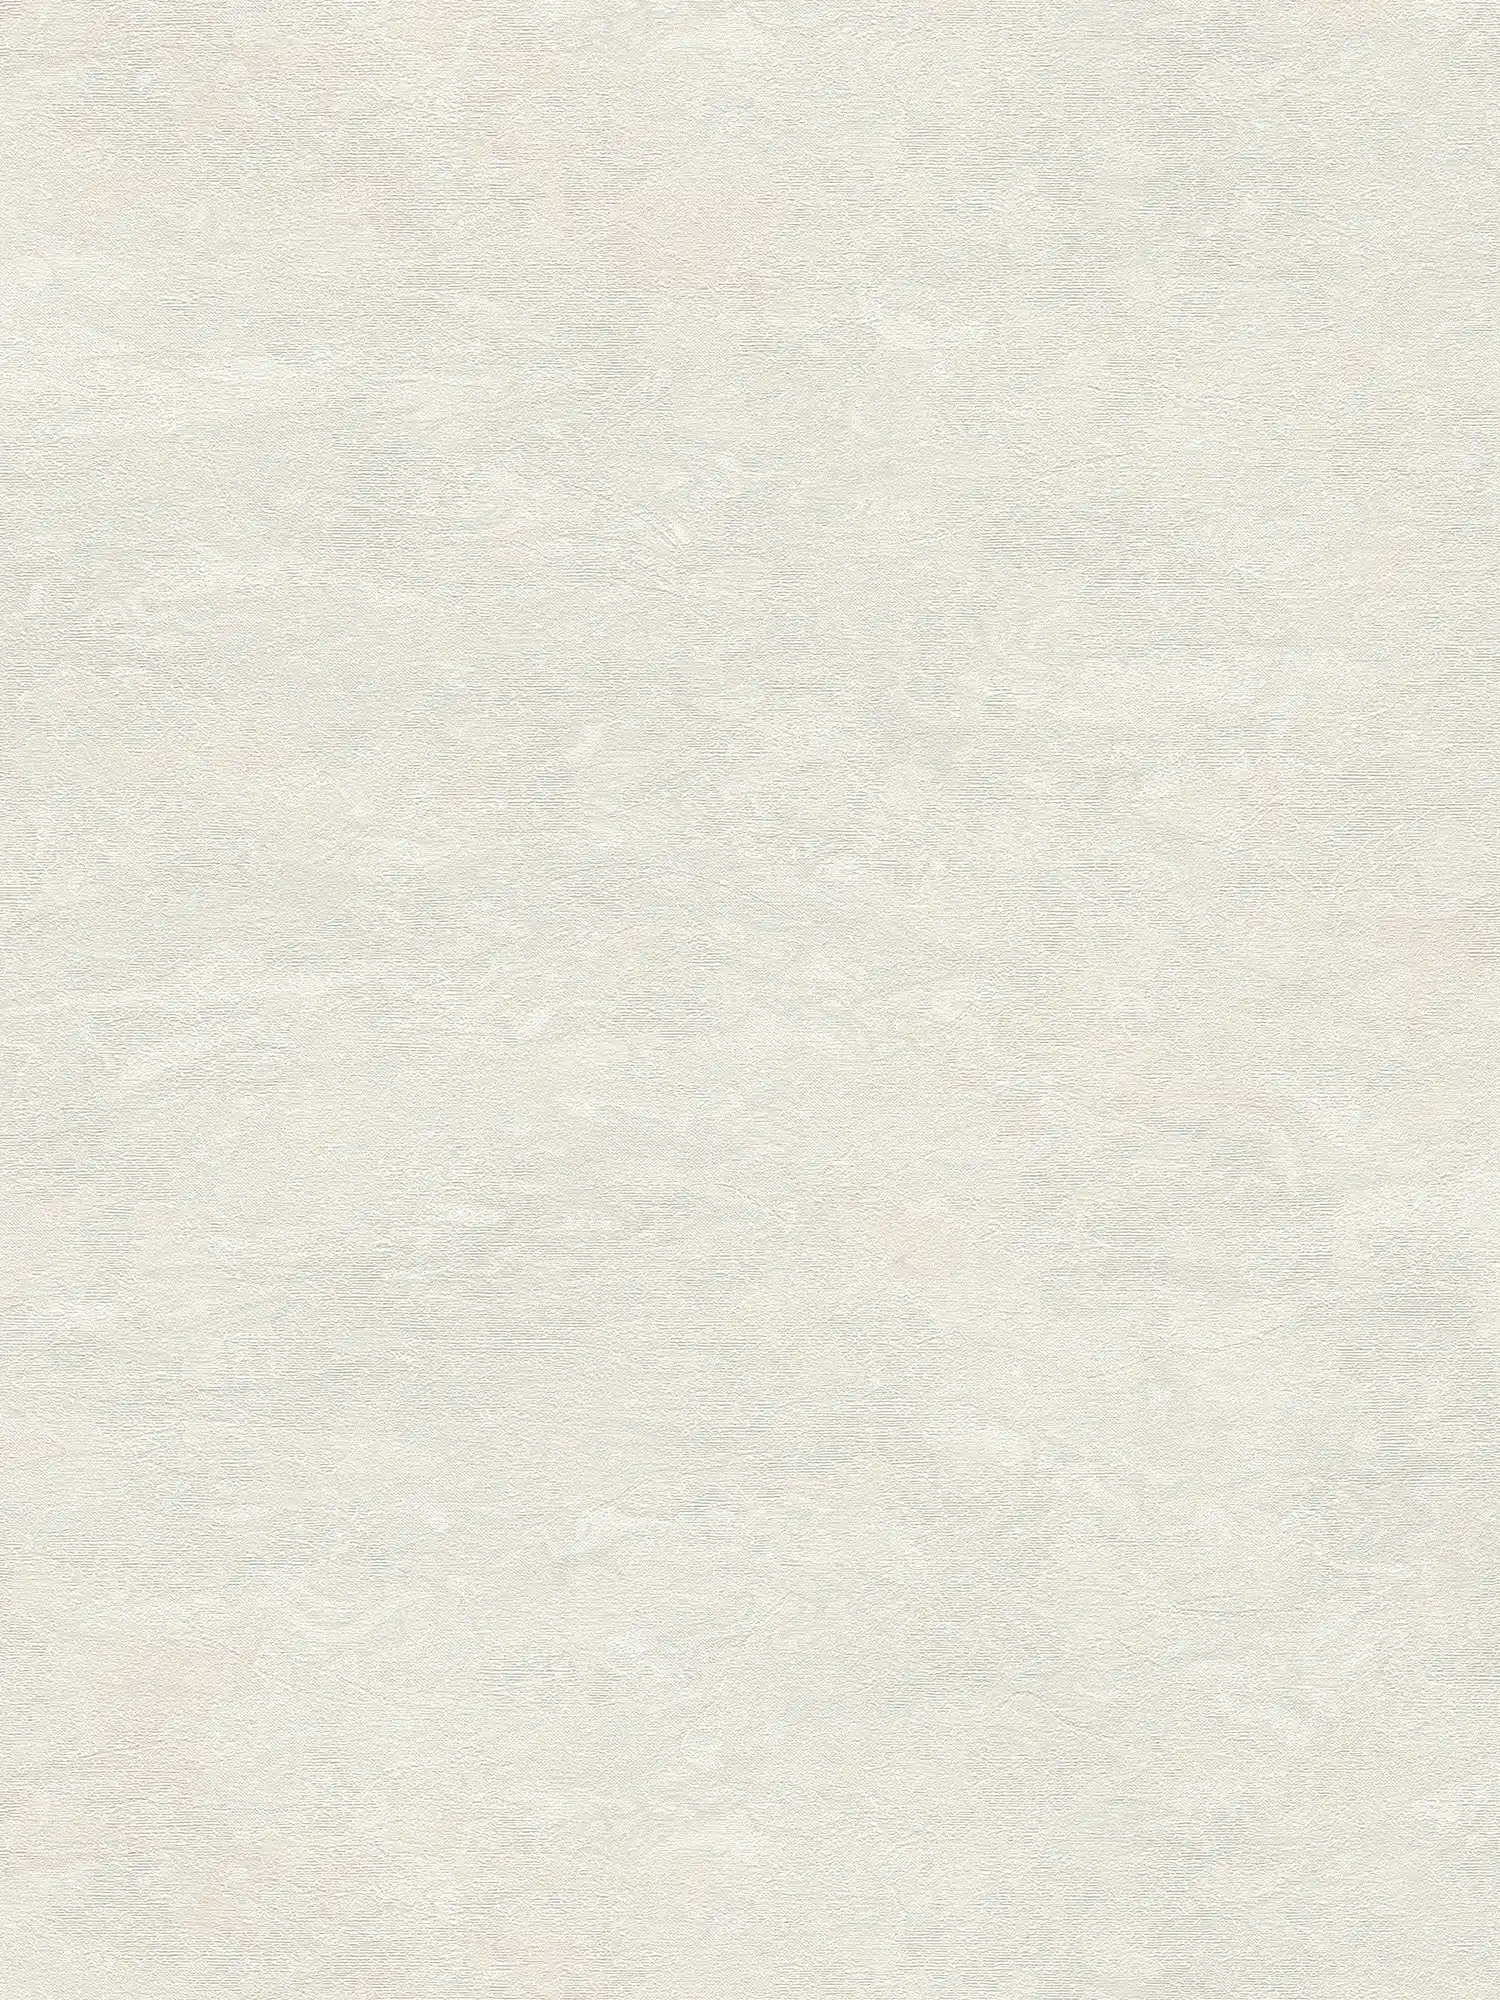 Cremeweiße Tapete mit dezenter Marmorierung – Weiß, Grau
